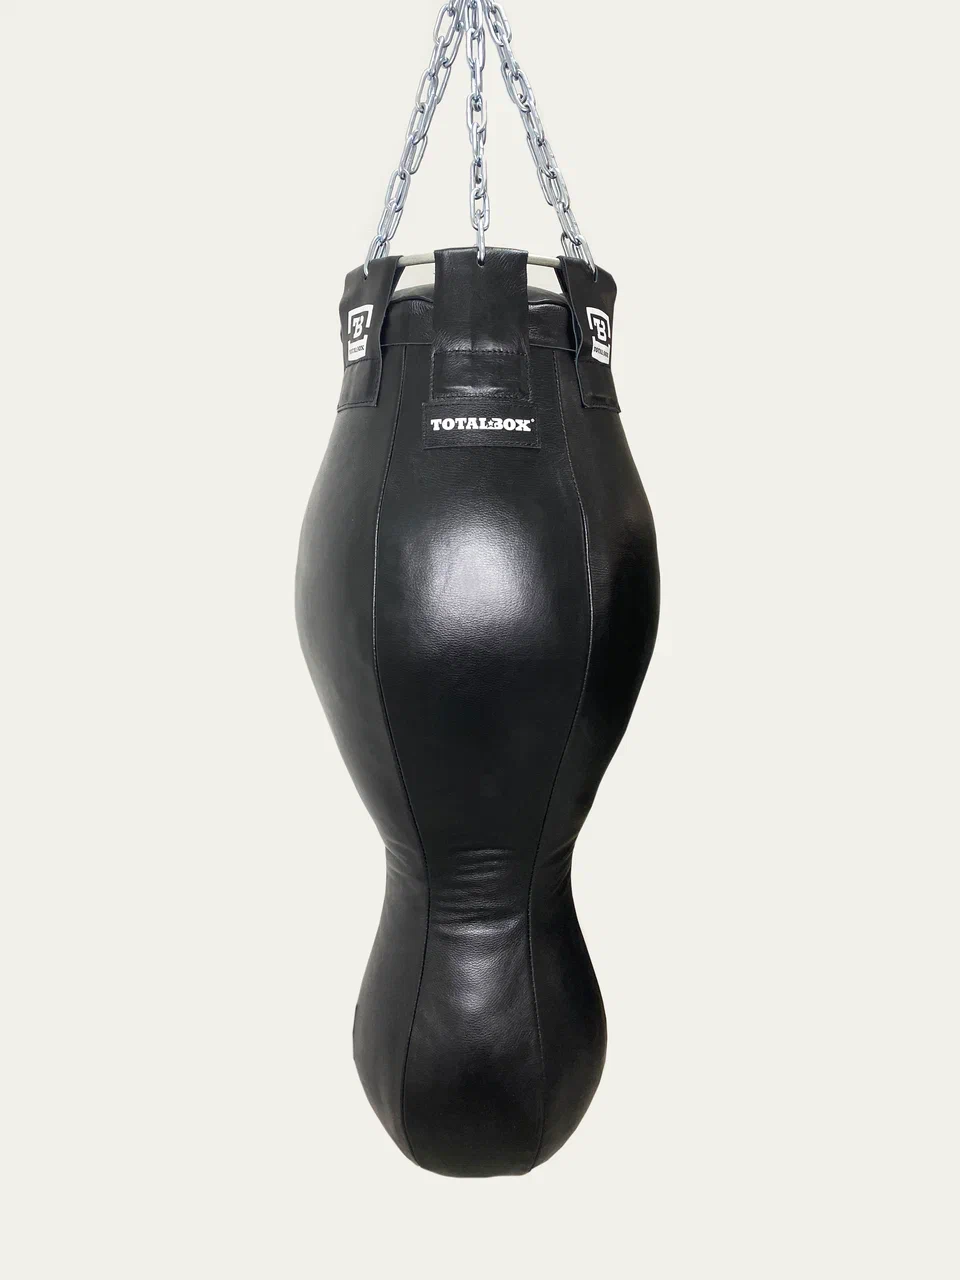 Фото мешок кожаный боксерский "фигурный" totalbox 32/20х110см, вес 45 кг.